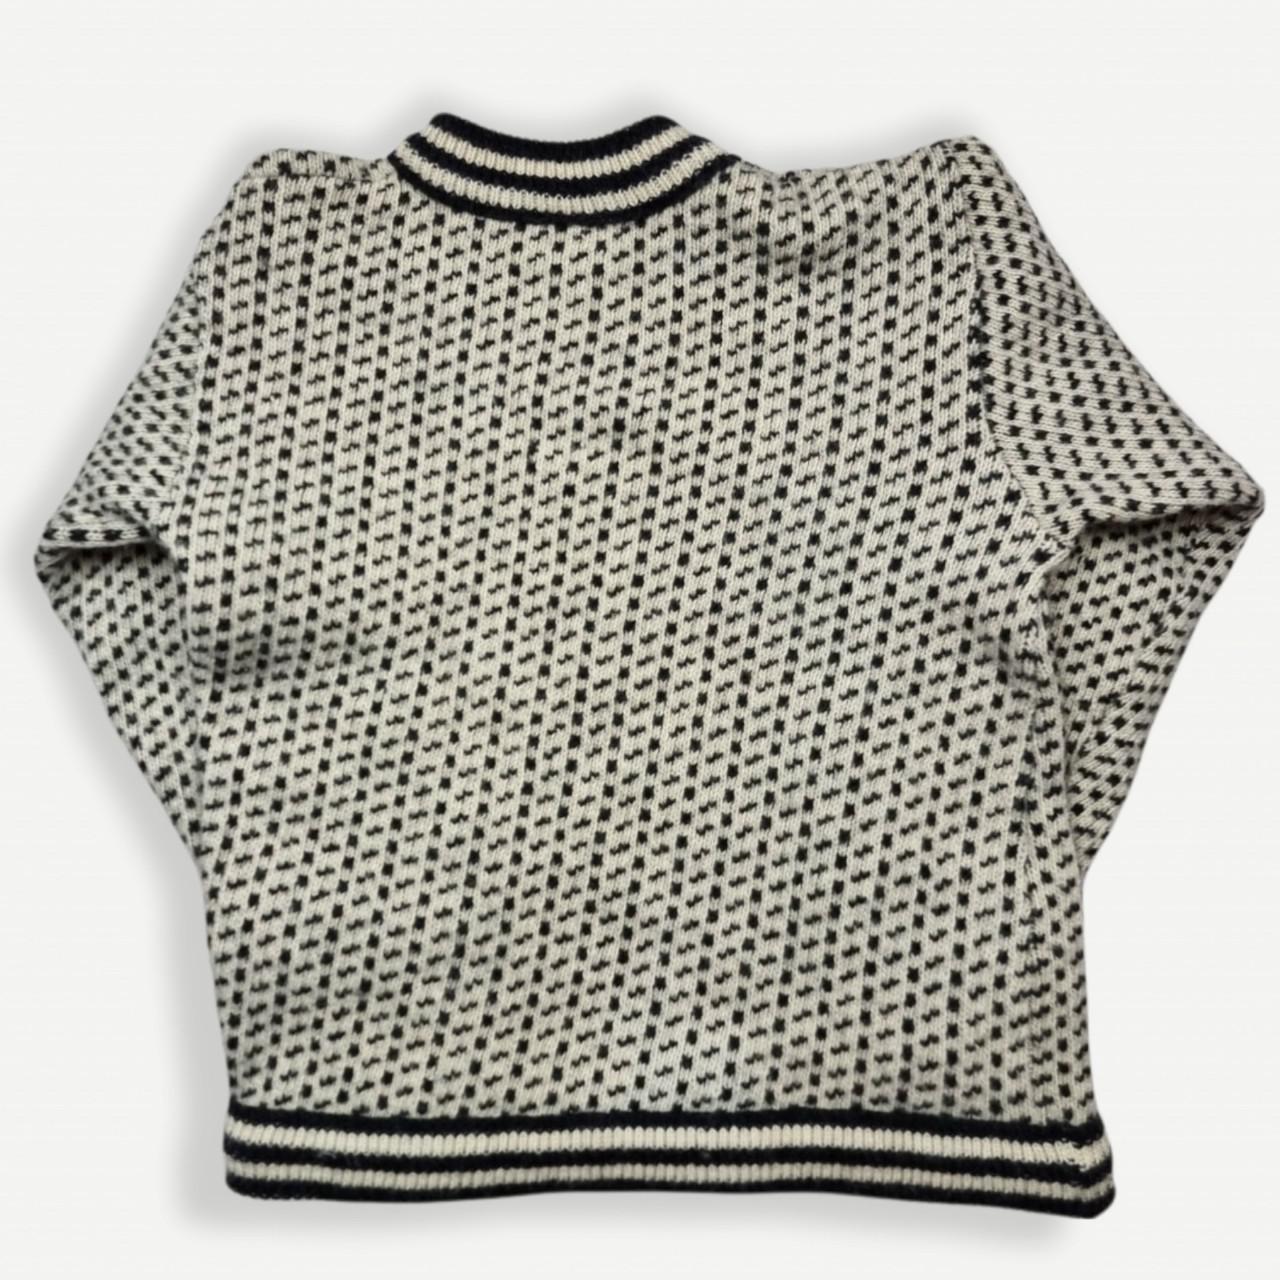 Vintage Jumper Chunky Knitted Sweater Wool Grandad... - Depop